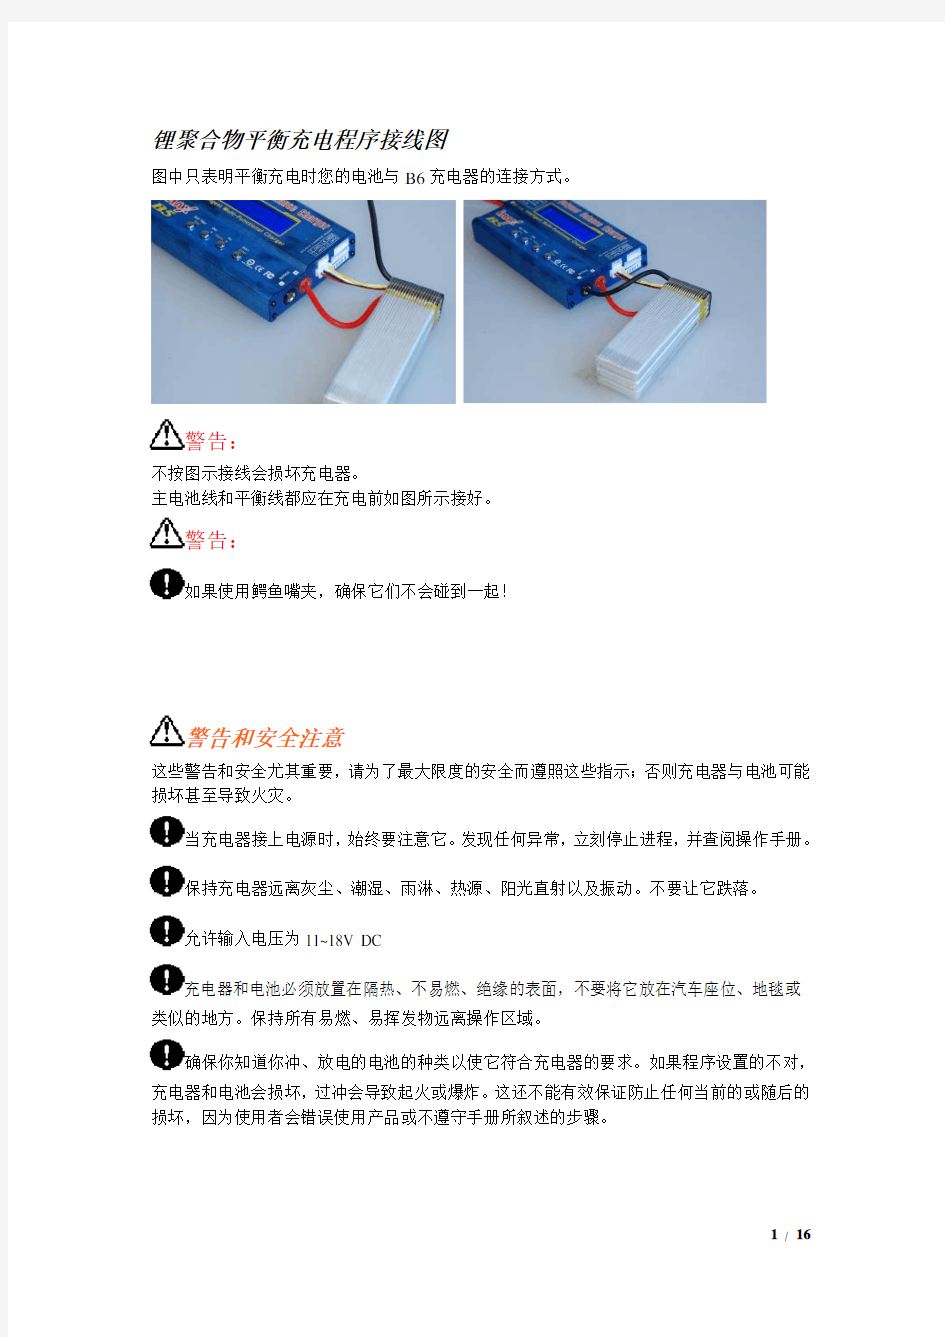 imax_B6充电器说明书中文翻译完美打印版